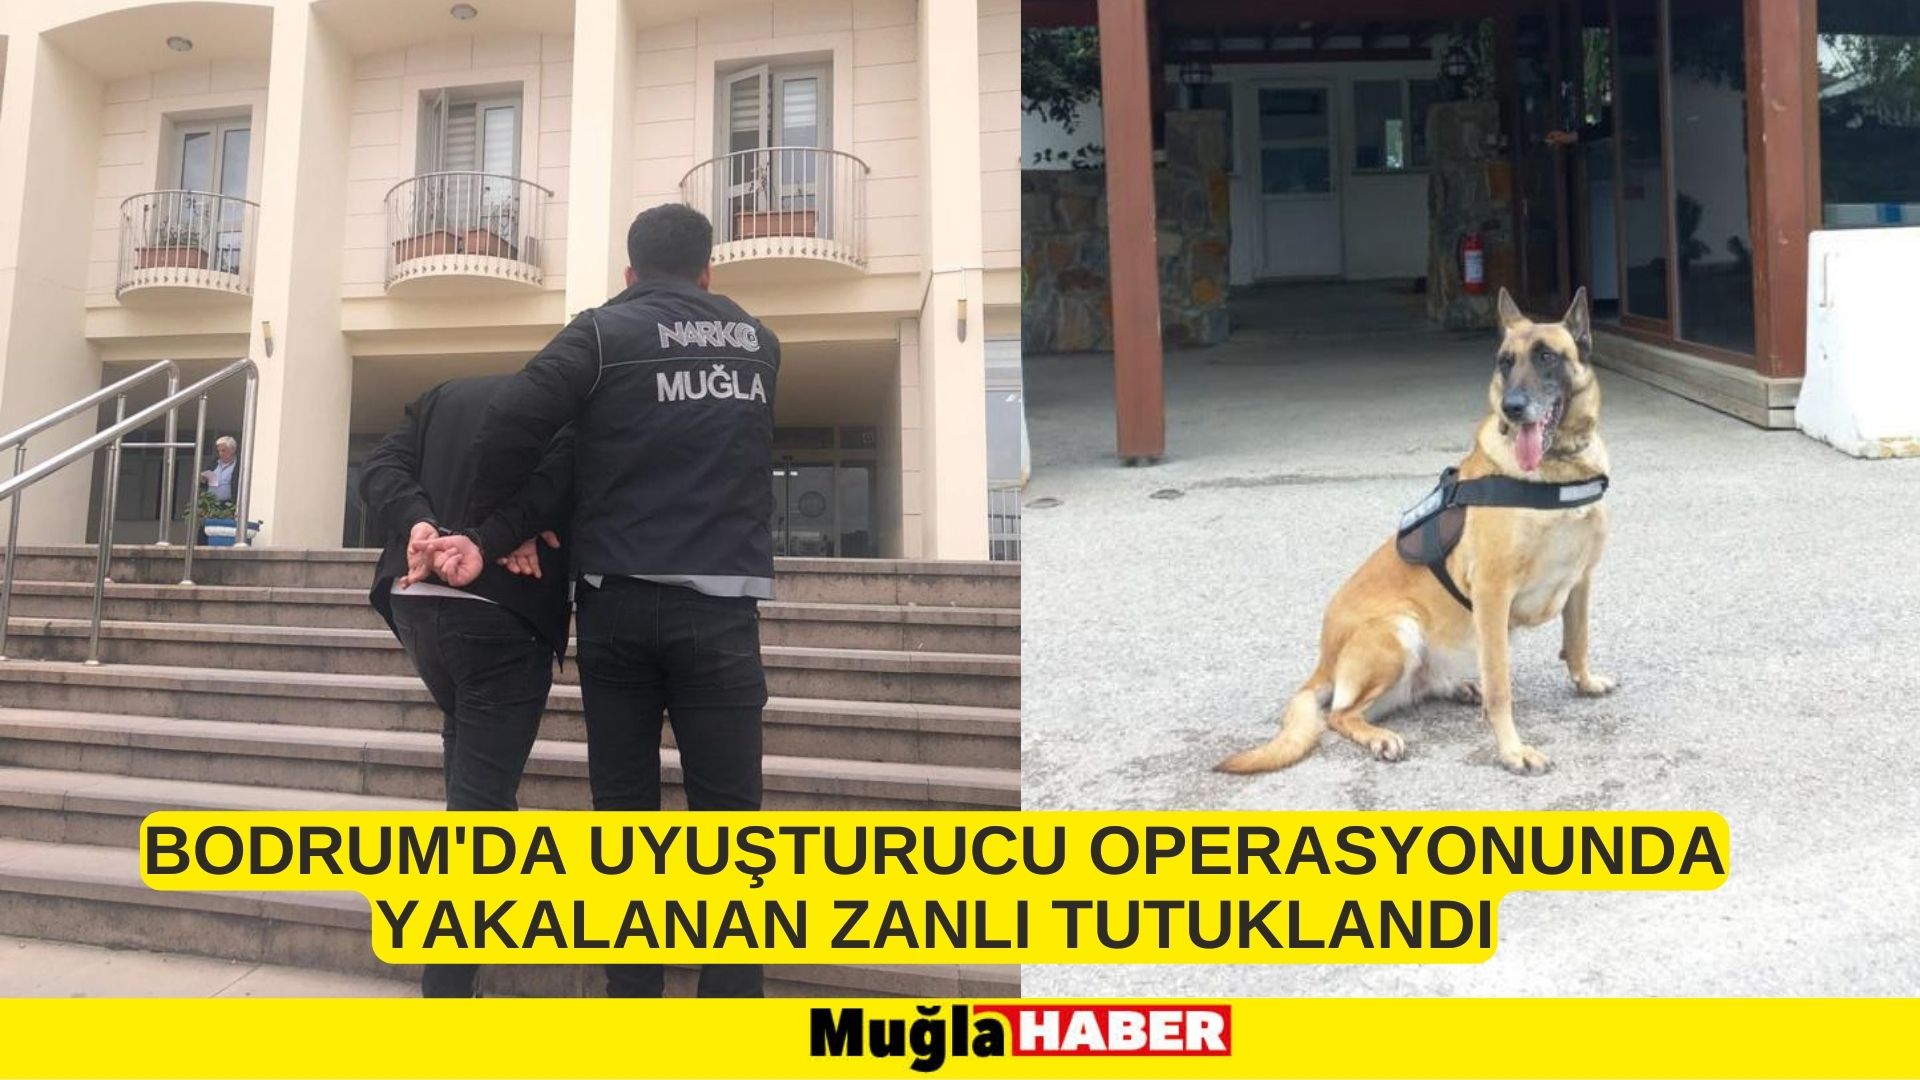 Bodrum'da uyuşturucu operasyonunda yakalanan zanlı tutuklandı